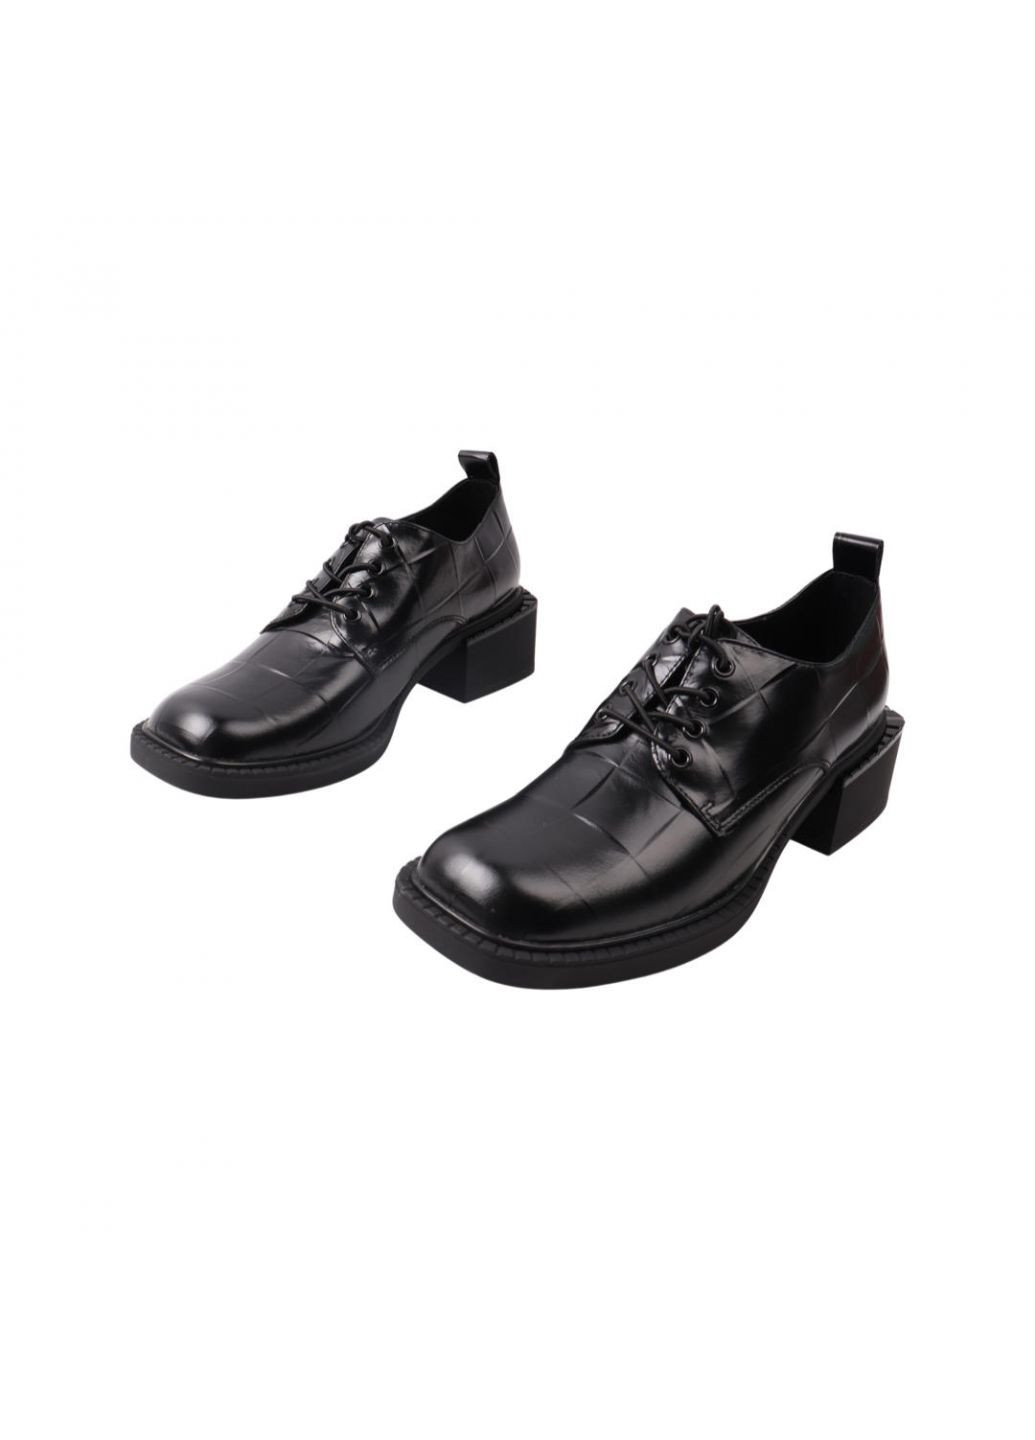 Туфлі жіночі чорні натуральна шкіра Oeego 83-21dtc (257439183)